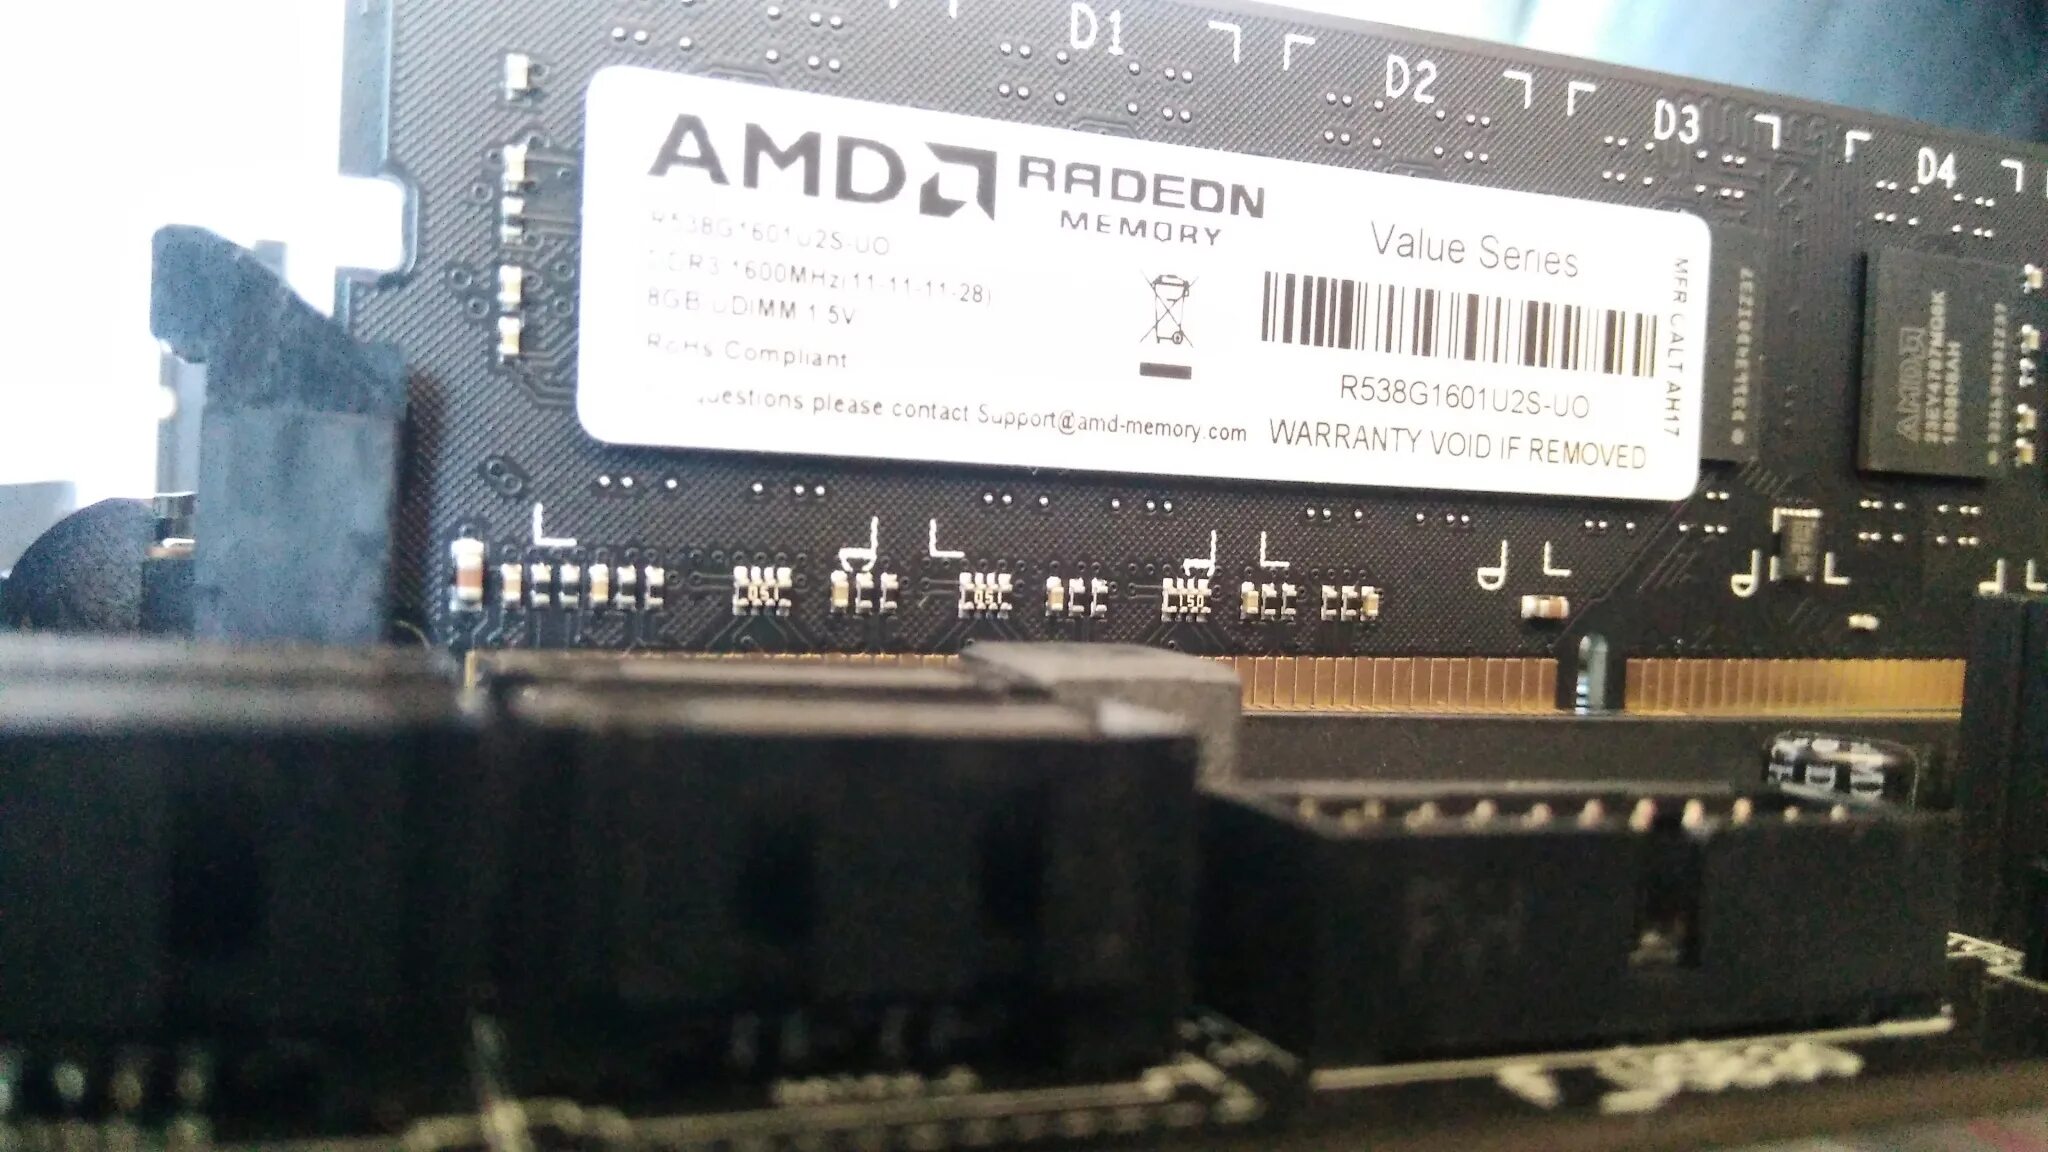 Поддержка памяти amd. AMD r538g1601s2s-u ddr3 - 8гб. Модуль памяти AMD r538g1601u2s-uo Black ddr3 - 8гб 1600. Оперативная память AMD Radeon r5 Entertainment Series [r538g1601u2s-u] 8 ГБ. AMD Radeon ddr3 8gb (r5s38g1601u2s).